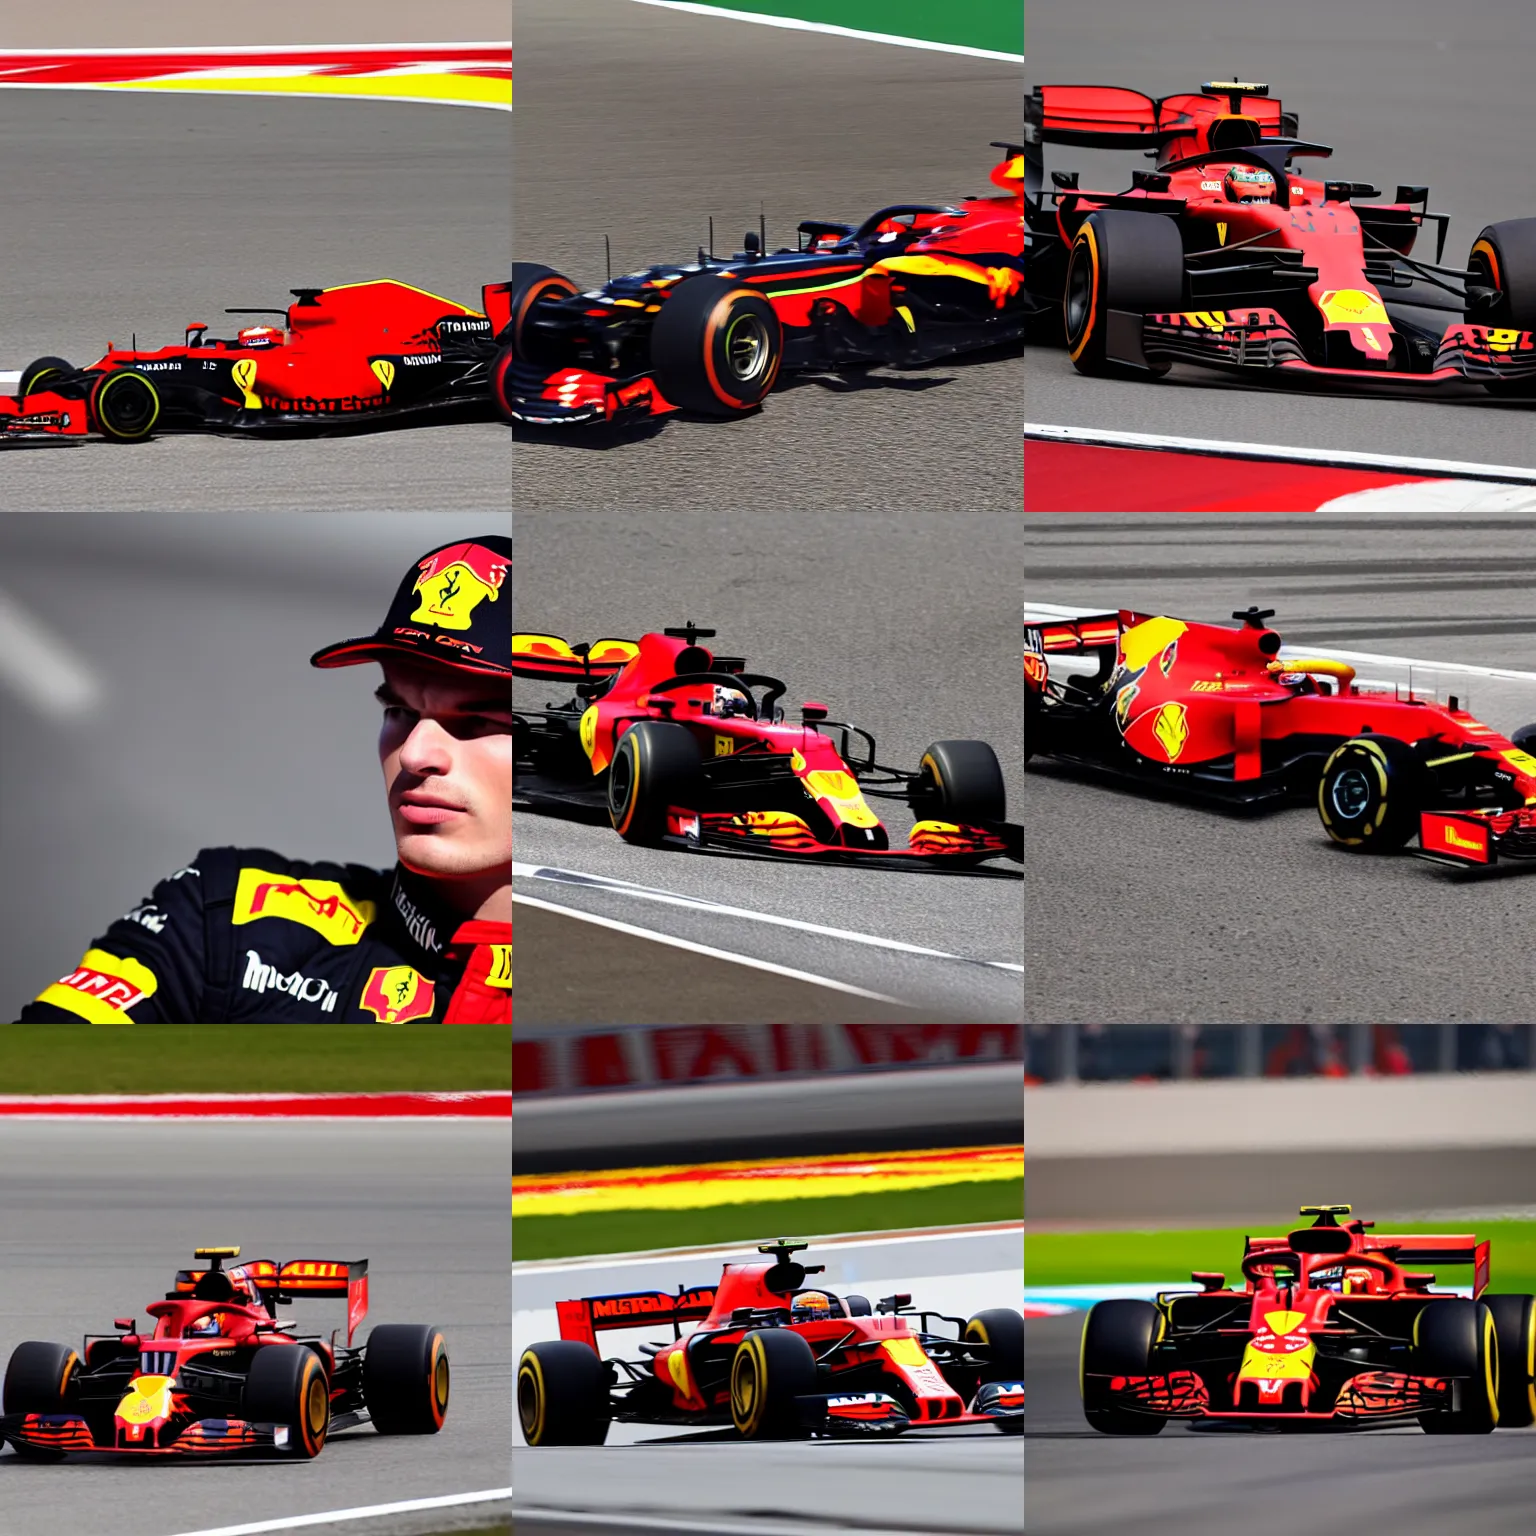 Prompt: Max Verstappen driving for Ferrari F1 team